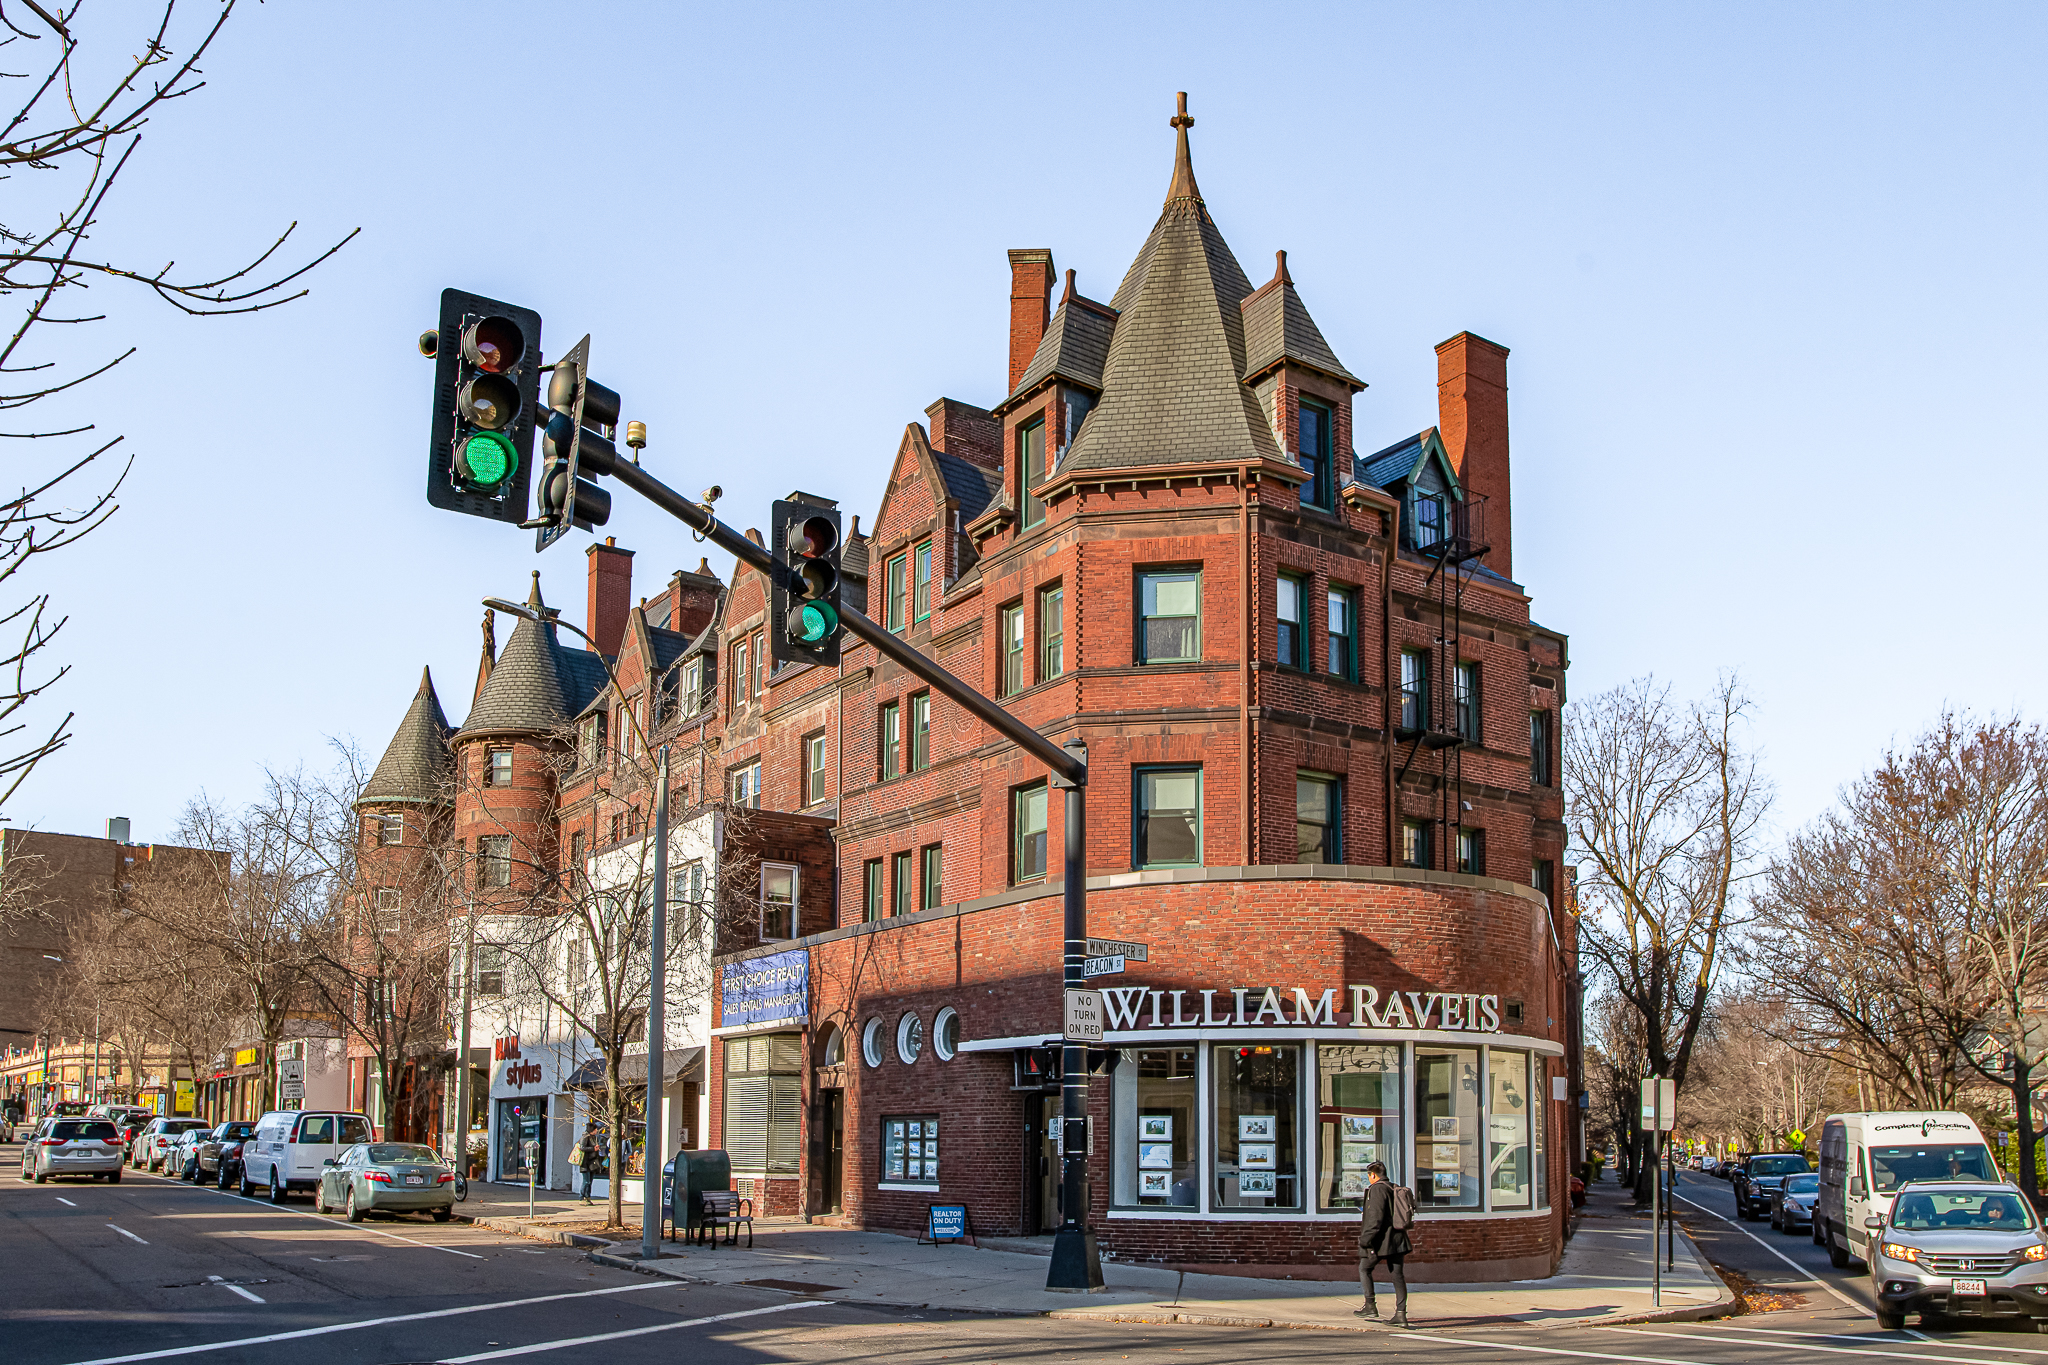 Best Suburbs of Boston, Massachusetts - NewHomeSource